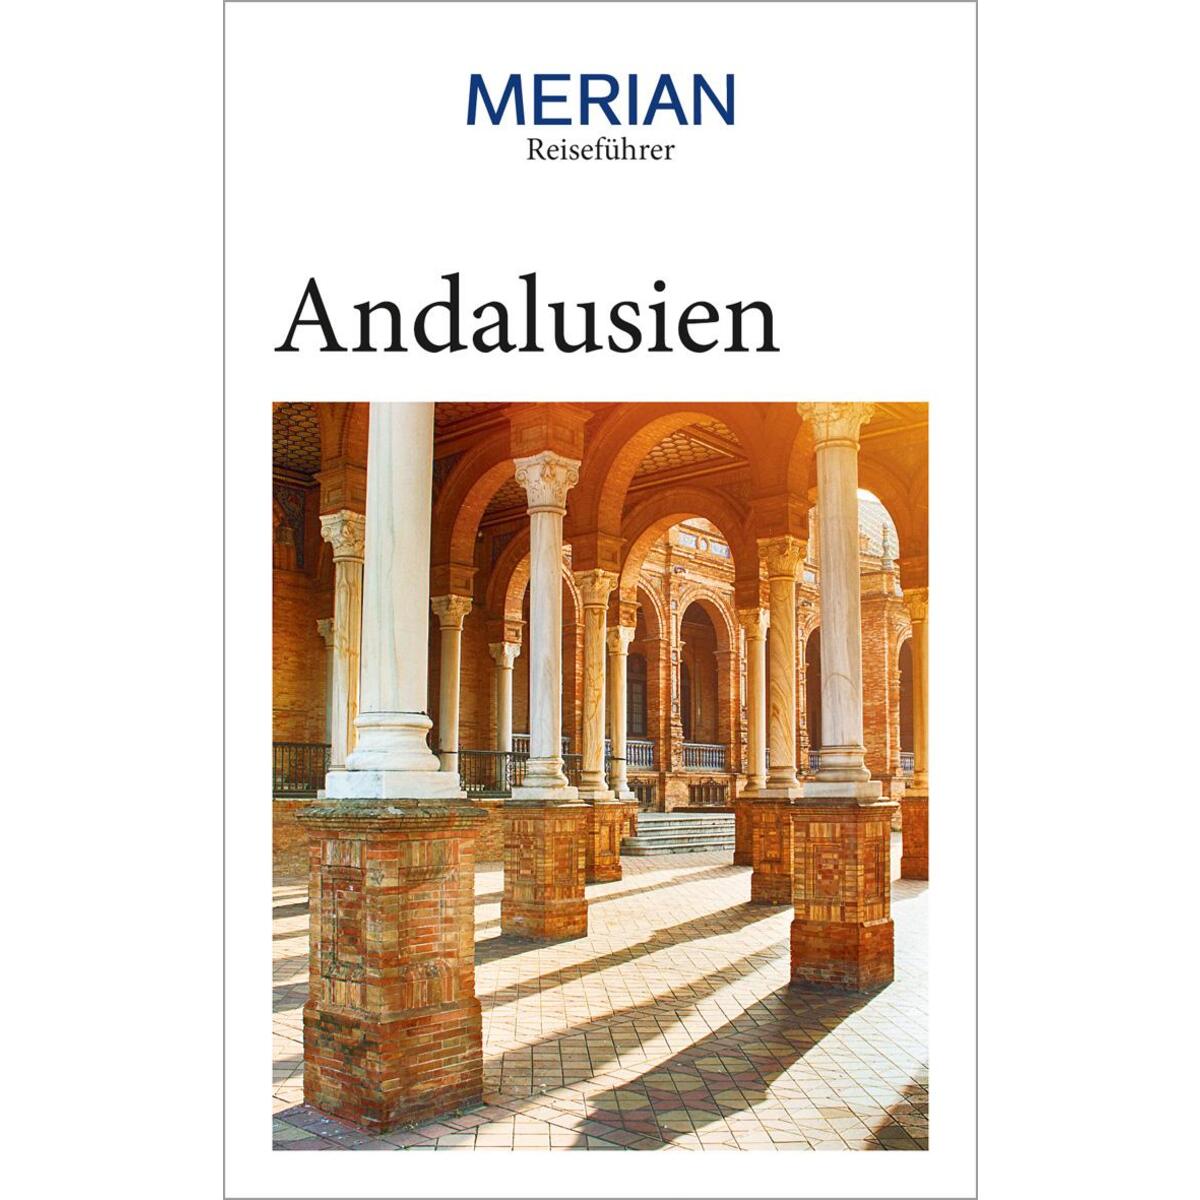 MERIAN Reiseführer Andalusien von Travel House Media GmbH